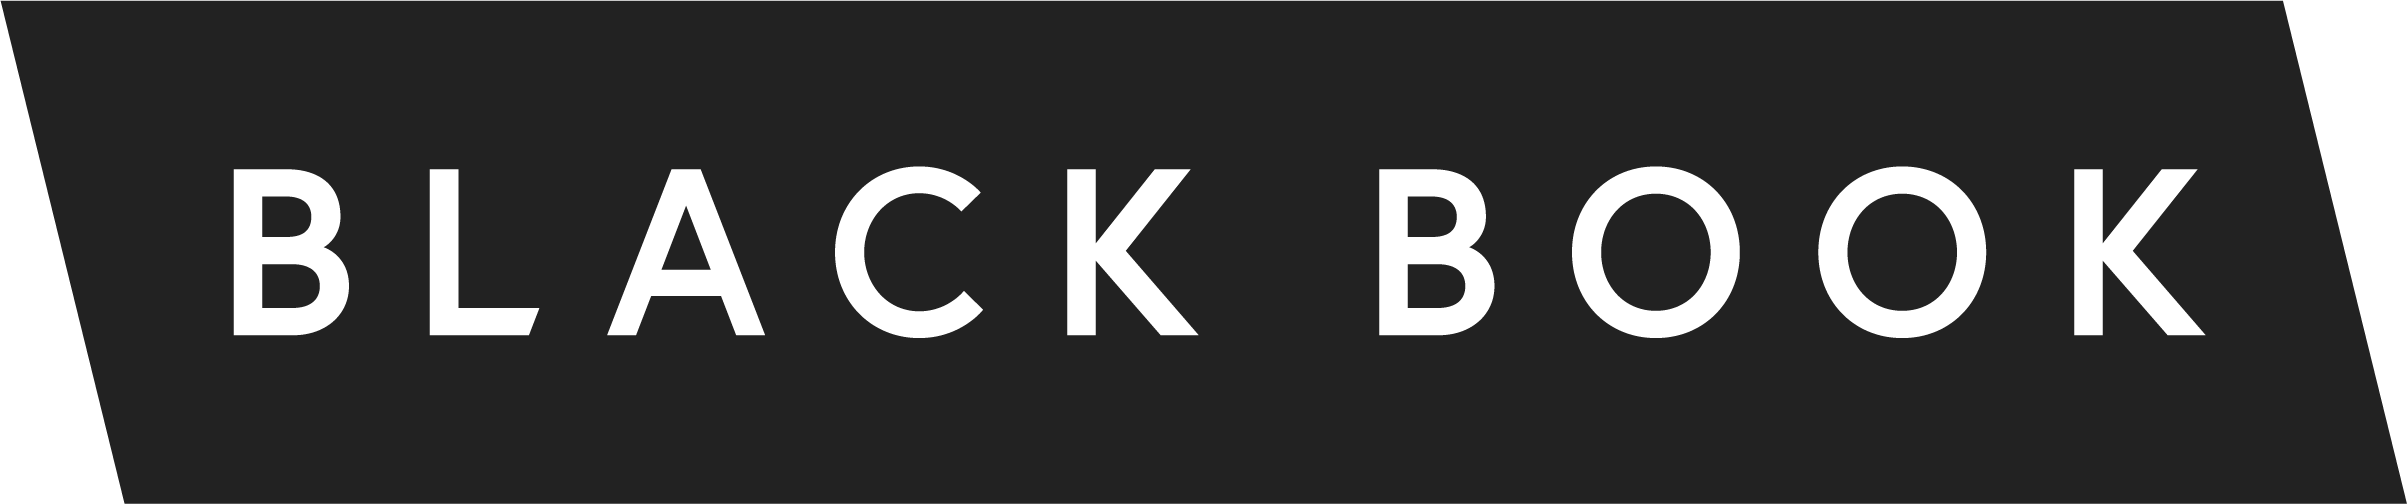 Blackbook logo